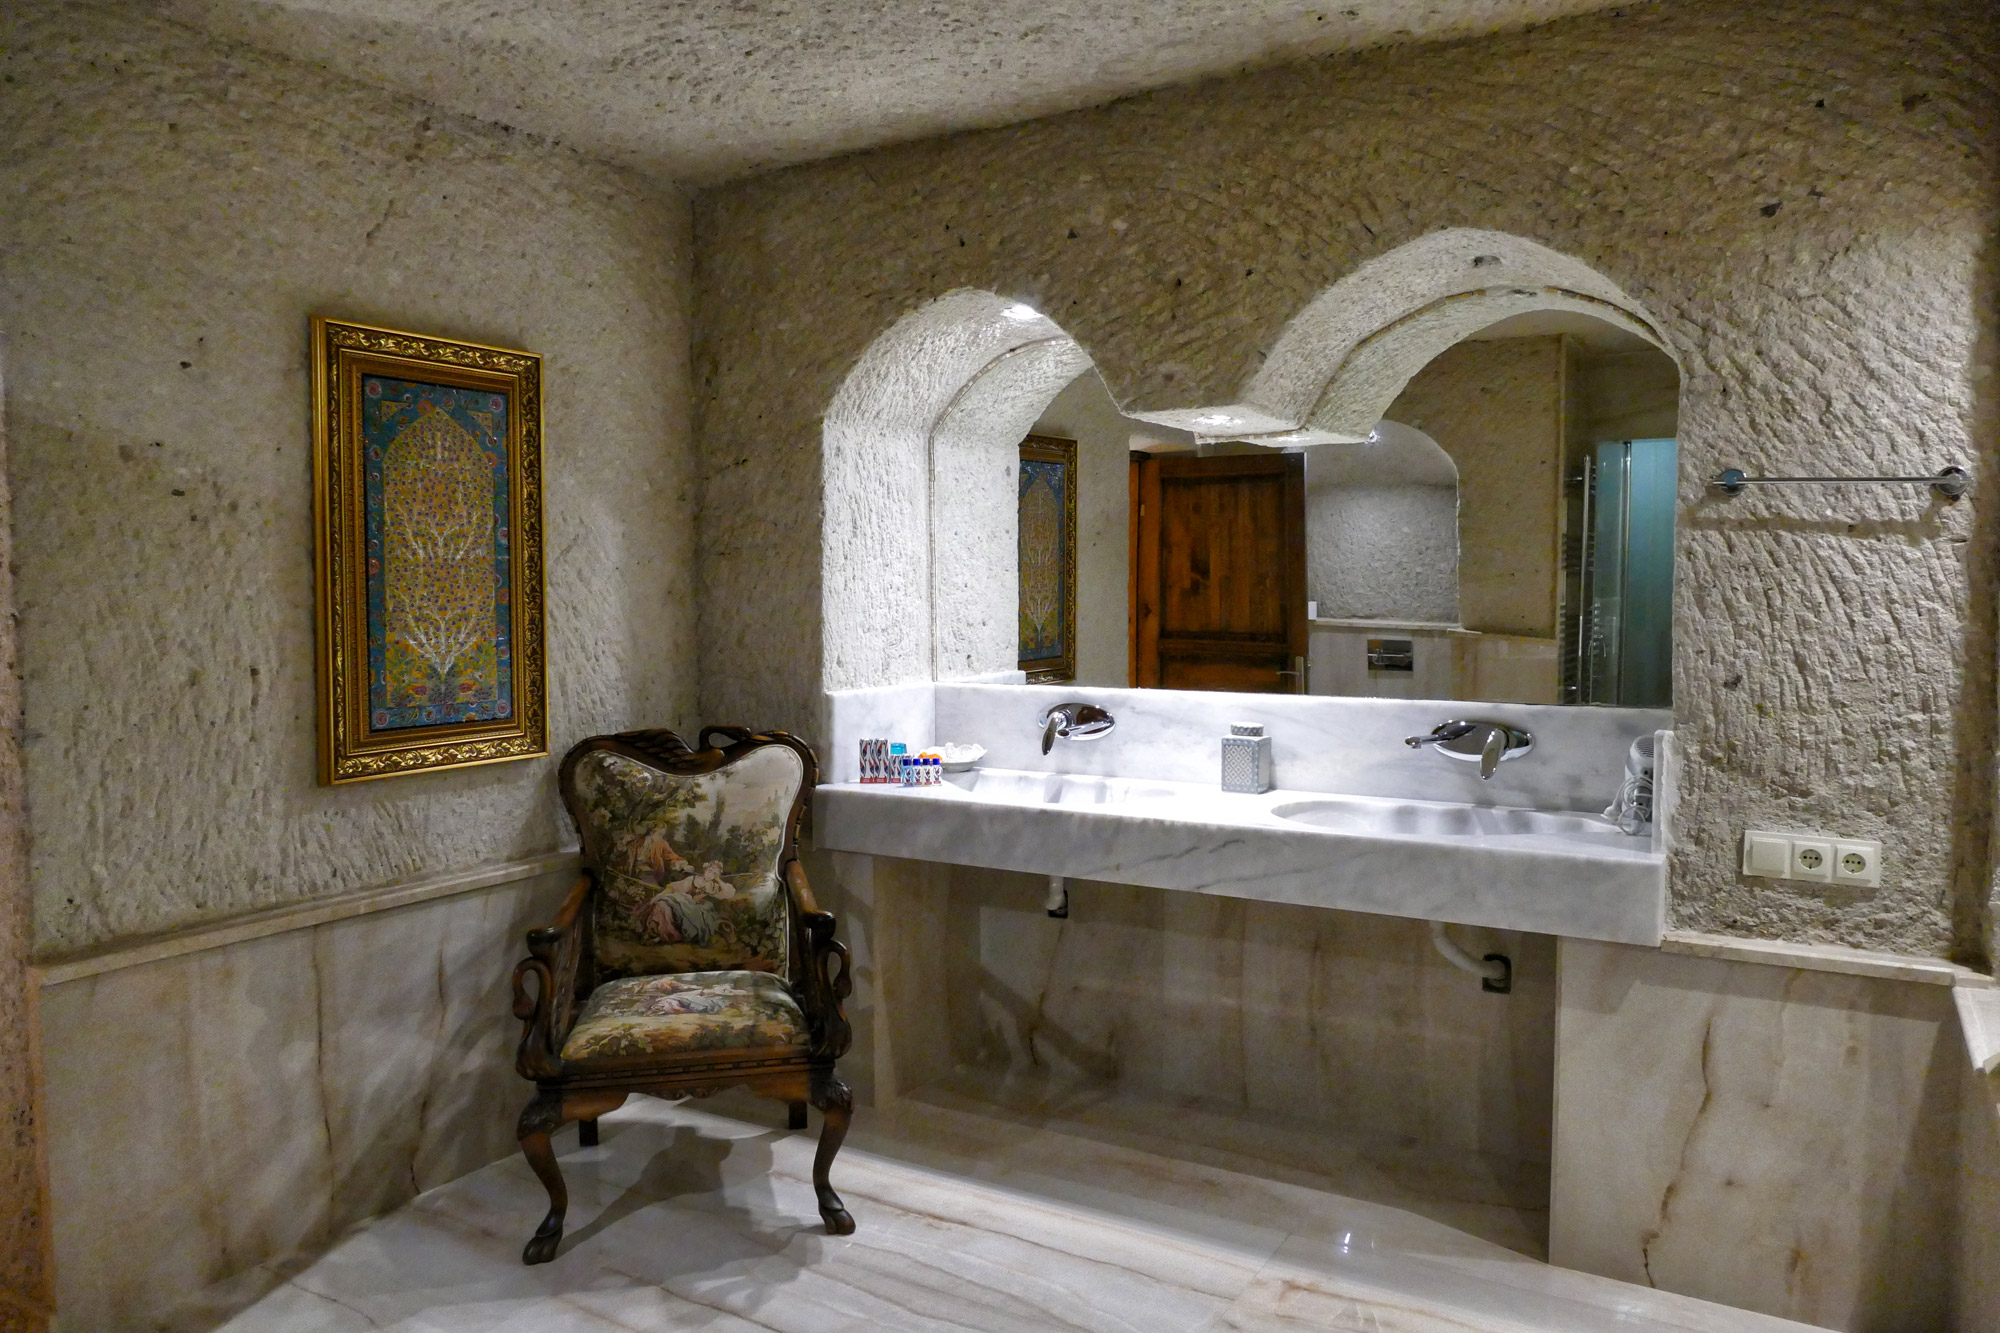 Bijzondere hotels: Hotel Lale Saray in Cappadocië - Reizen ...